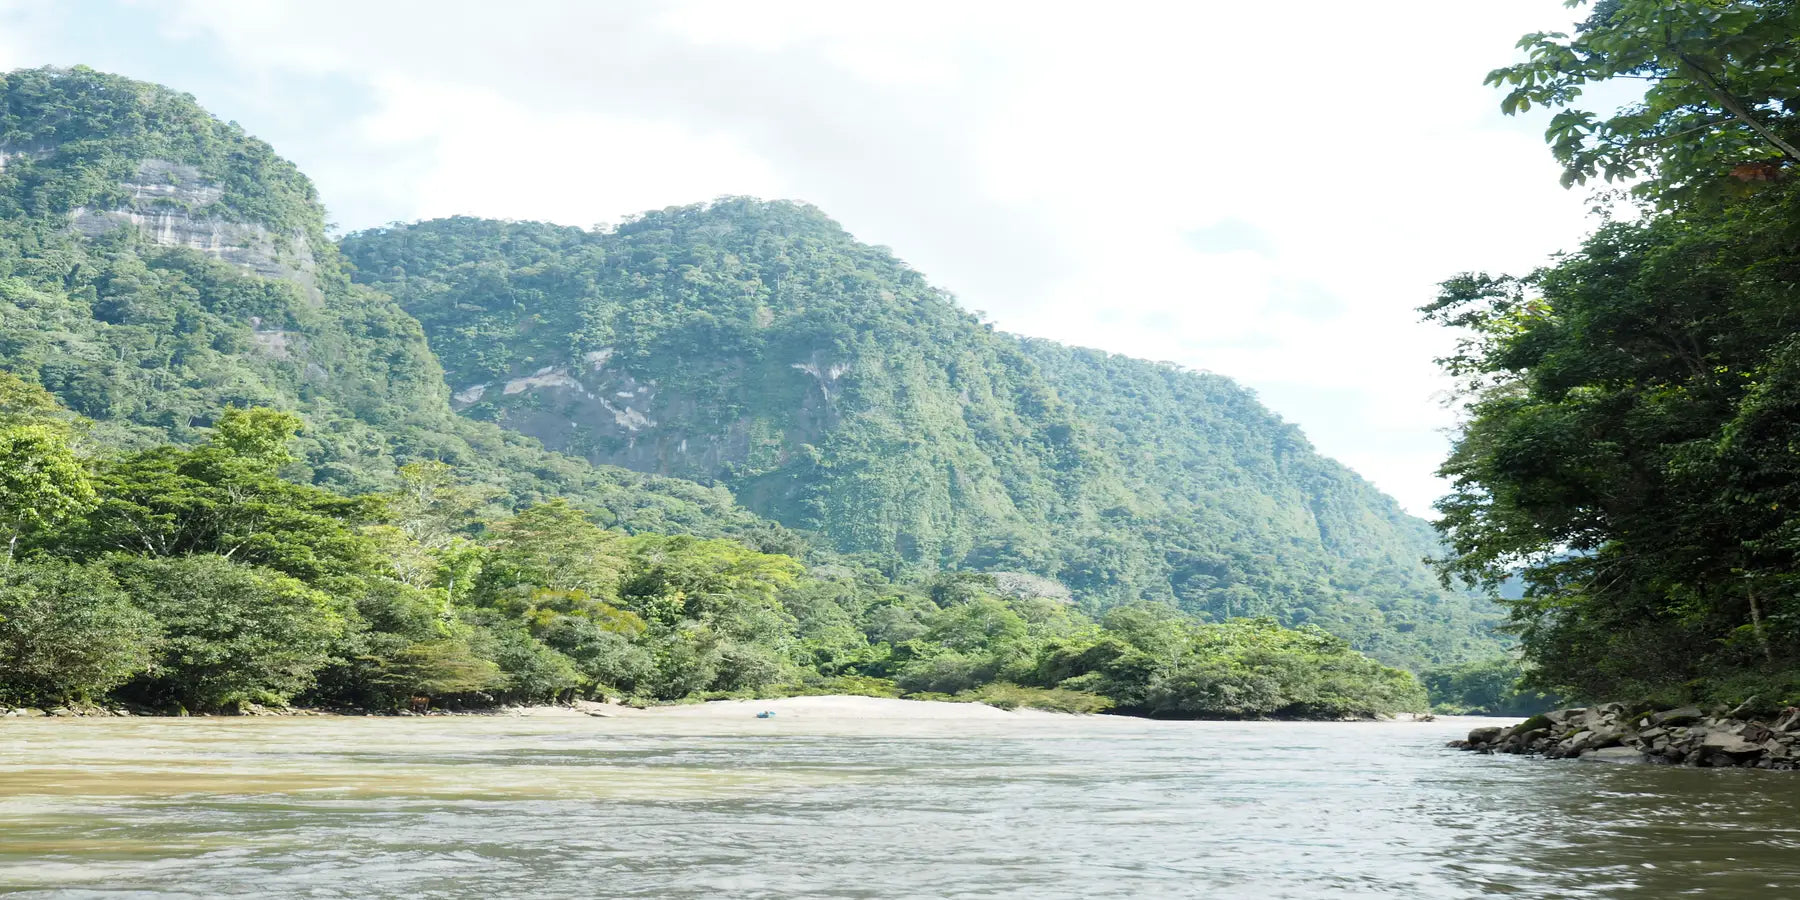 Tag 17 - Das Herz des Regenwald-Schutzprojektes: Gemeinschaftliche Überwachung